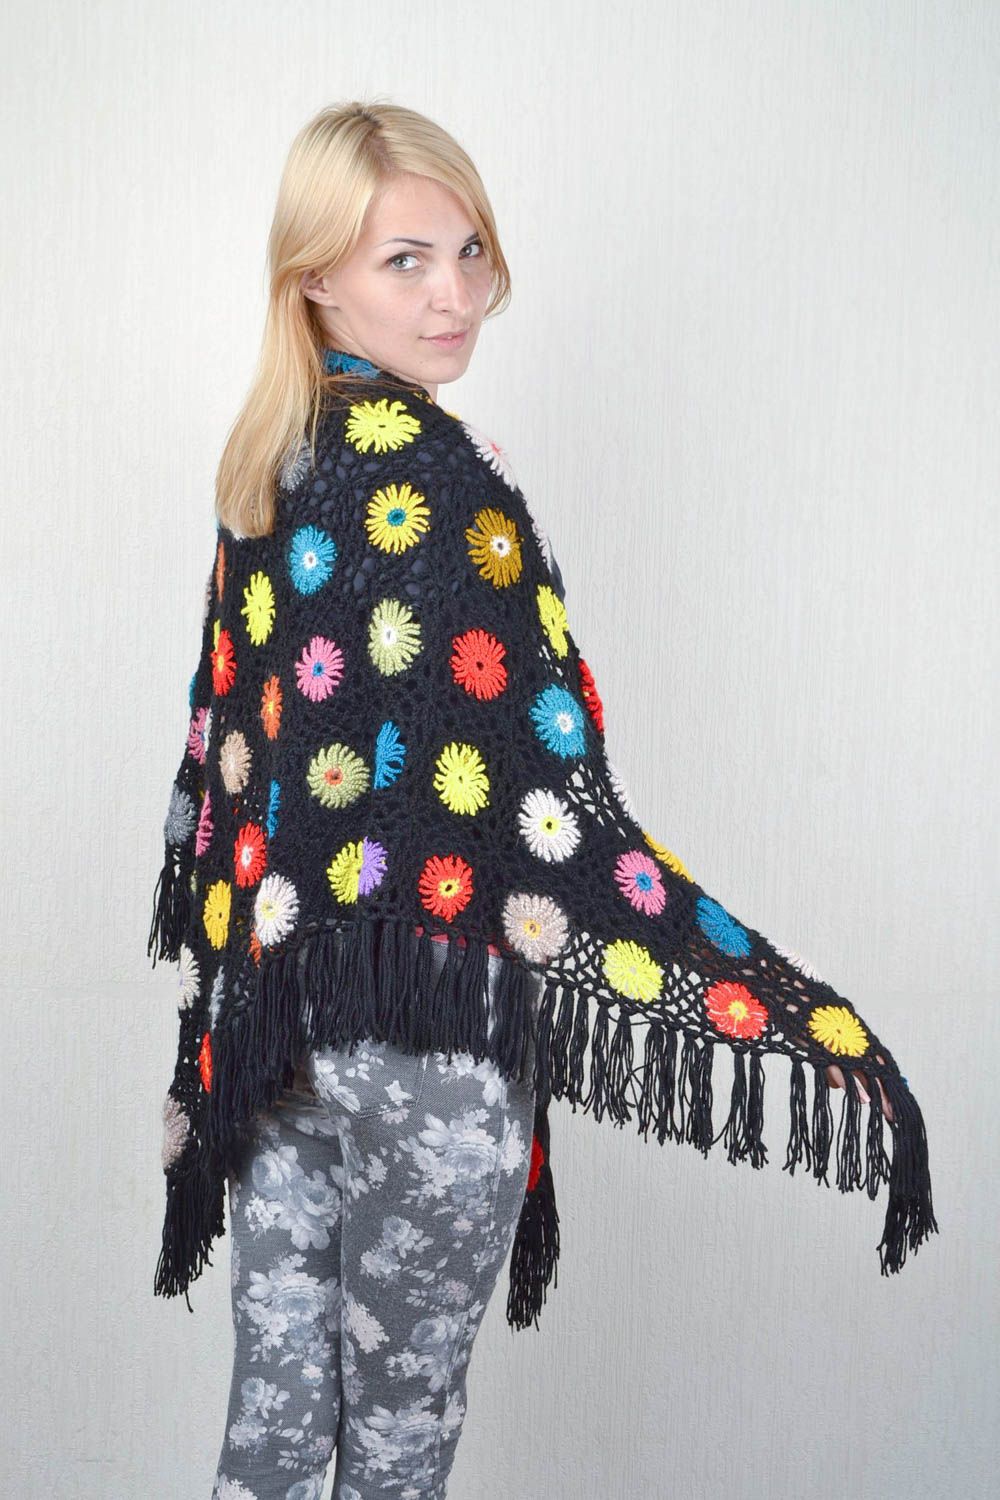 Handmade designer shawl unique winter stylish accessory present for women photo 3